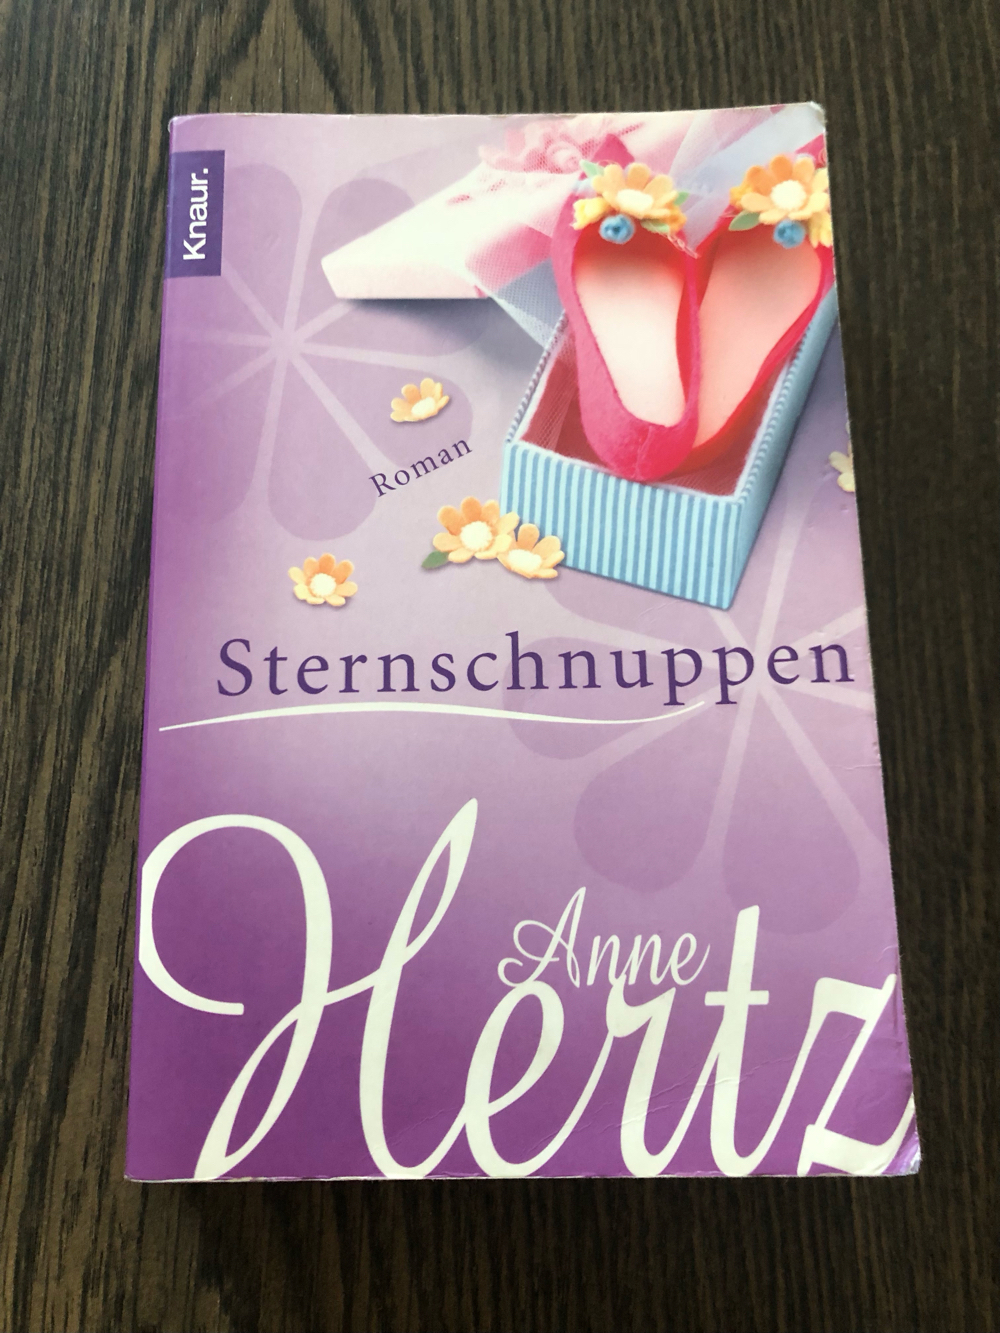 Sternschnuppen, Anne Hertz